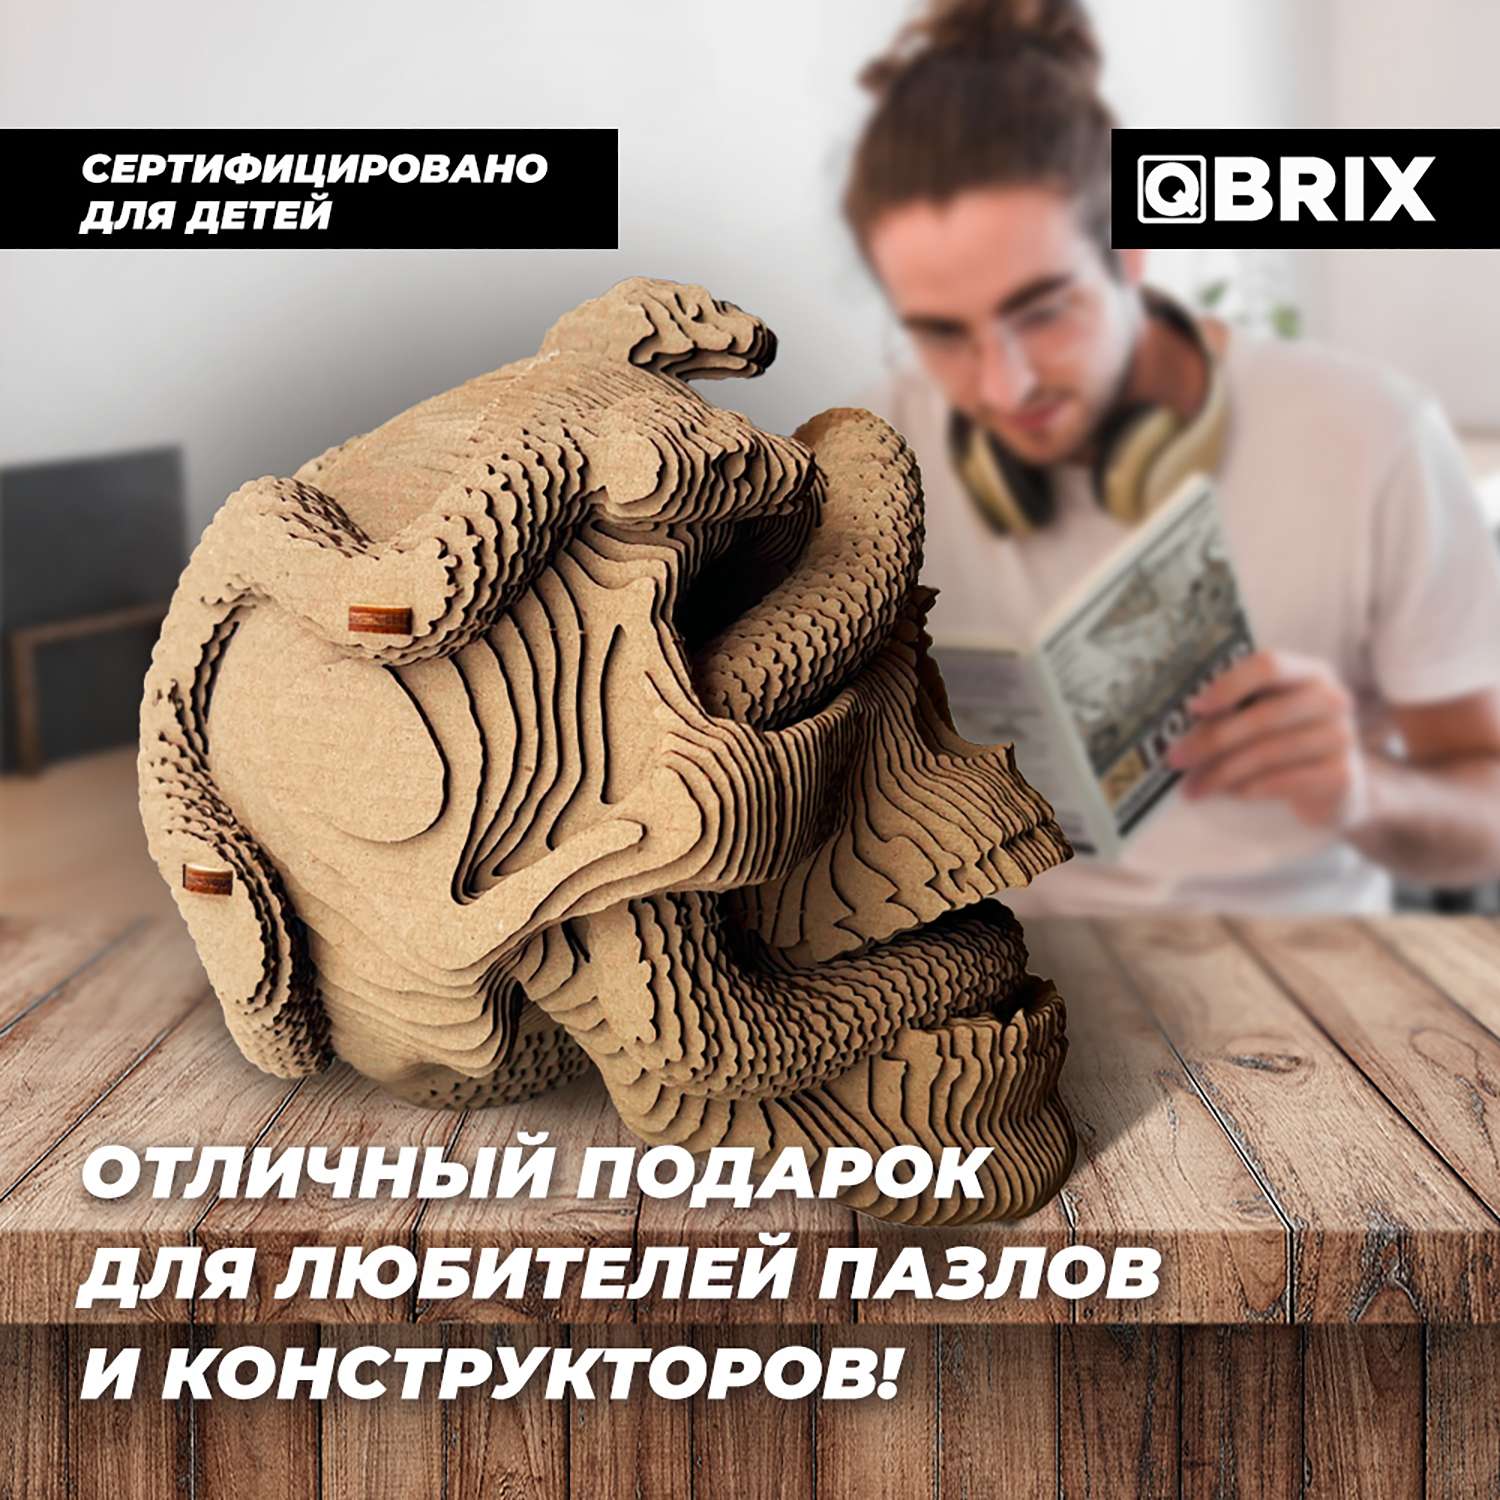 Конструктор QBRIX 3D картонный Одиссея 20020 20020 - фото 4